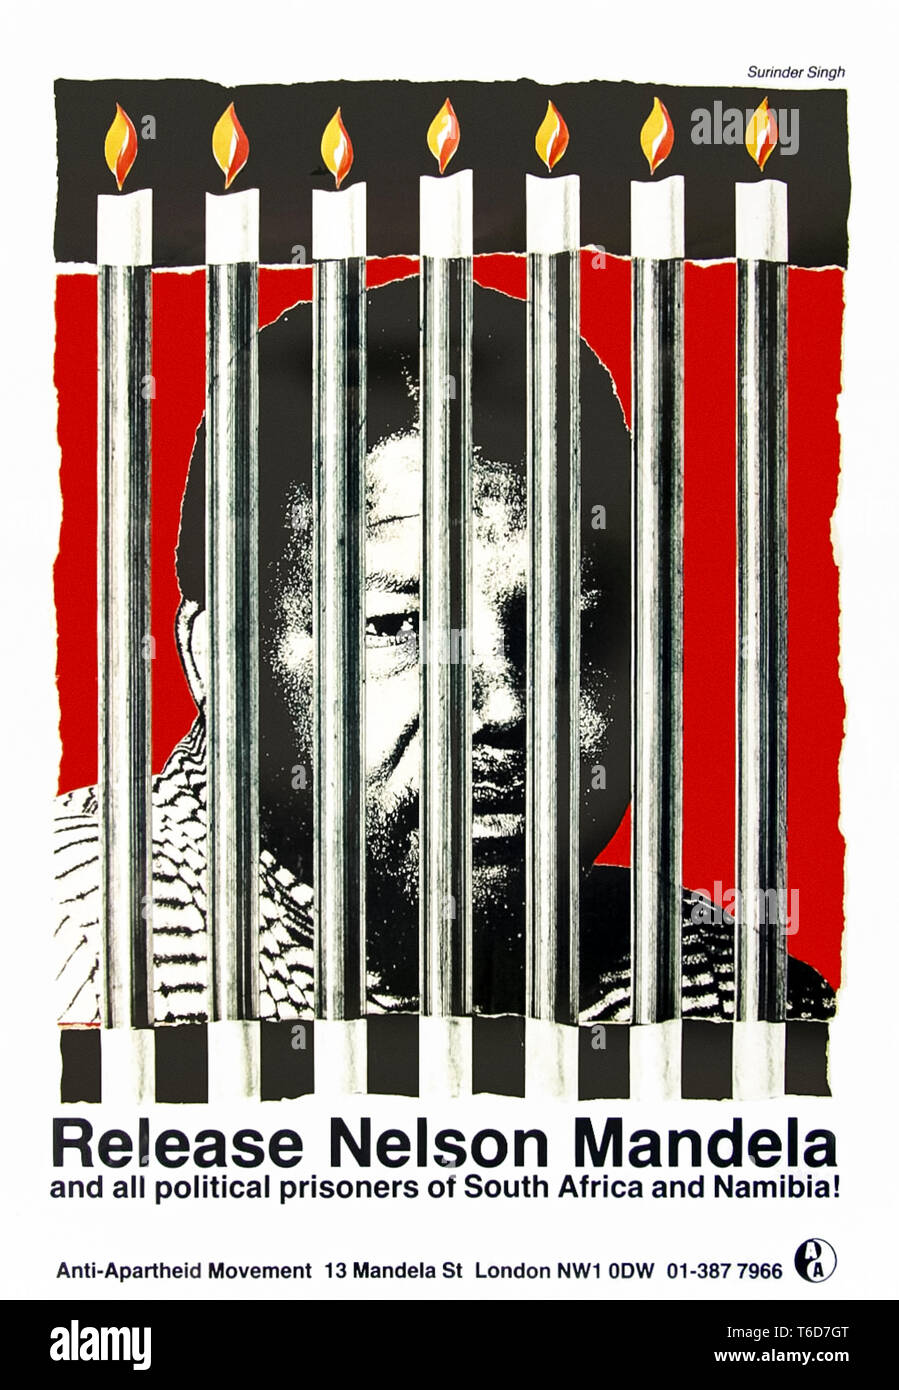 "Nelson Mandela und alle politischen Gefangenen aus Südafrika und Namibia!" Plakat 1988 durch die britische Anti-Apartheid-Bewegung produziert und von surinder Singh ausgelegt. Stockfoto